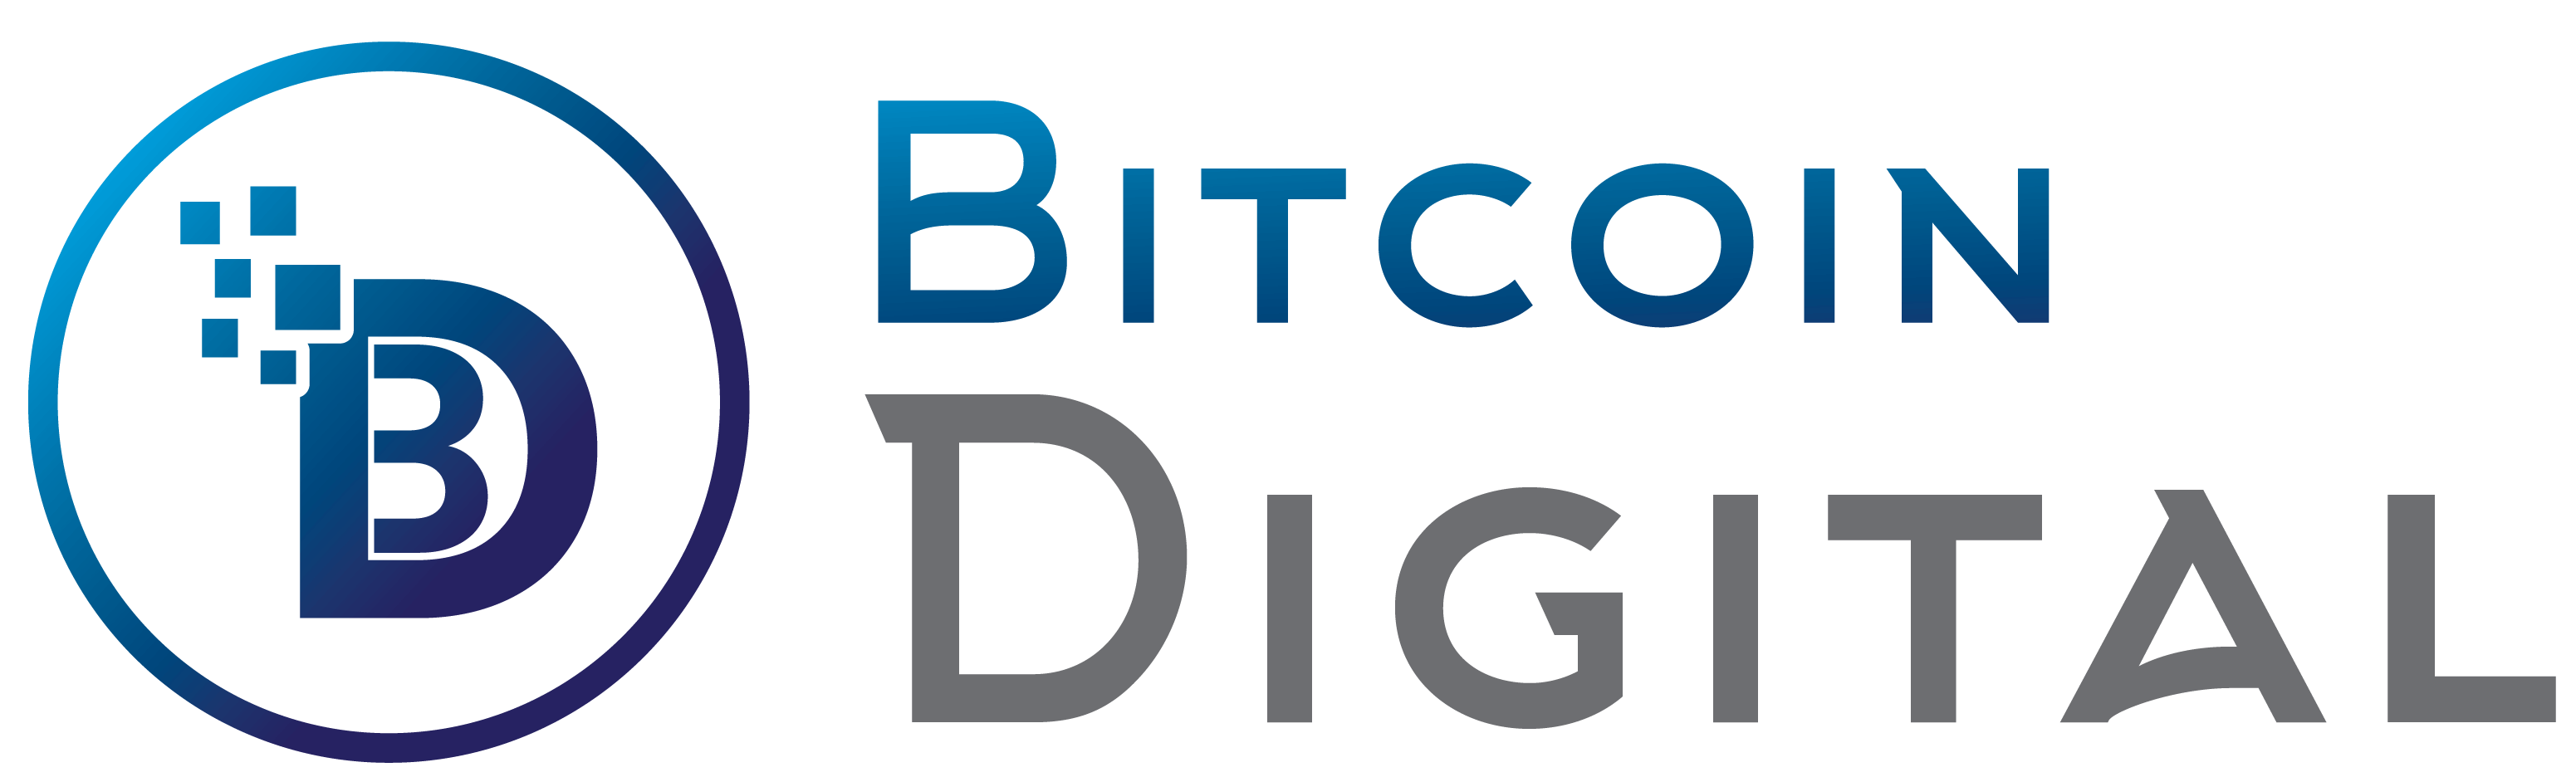 Bitcoin Digital - A equipe Bitcoin Digital